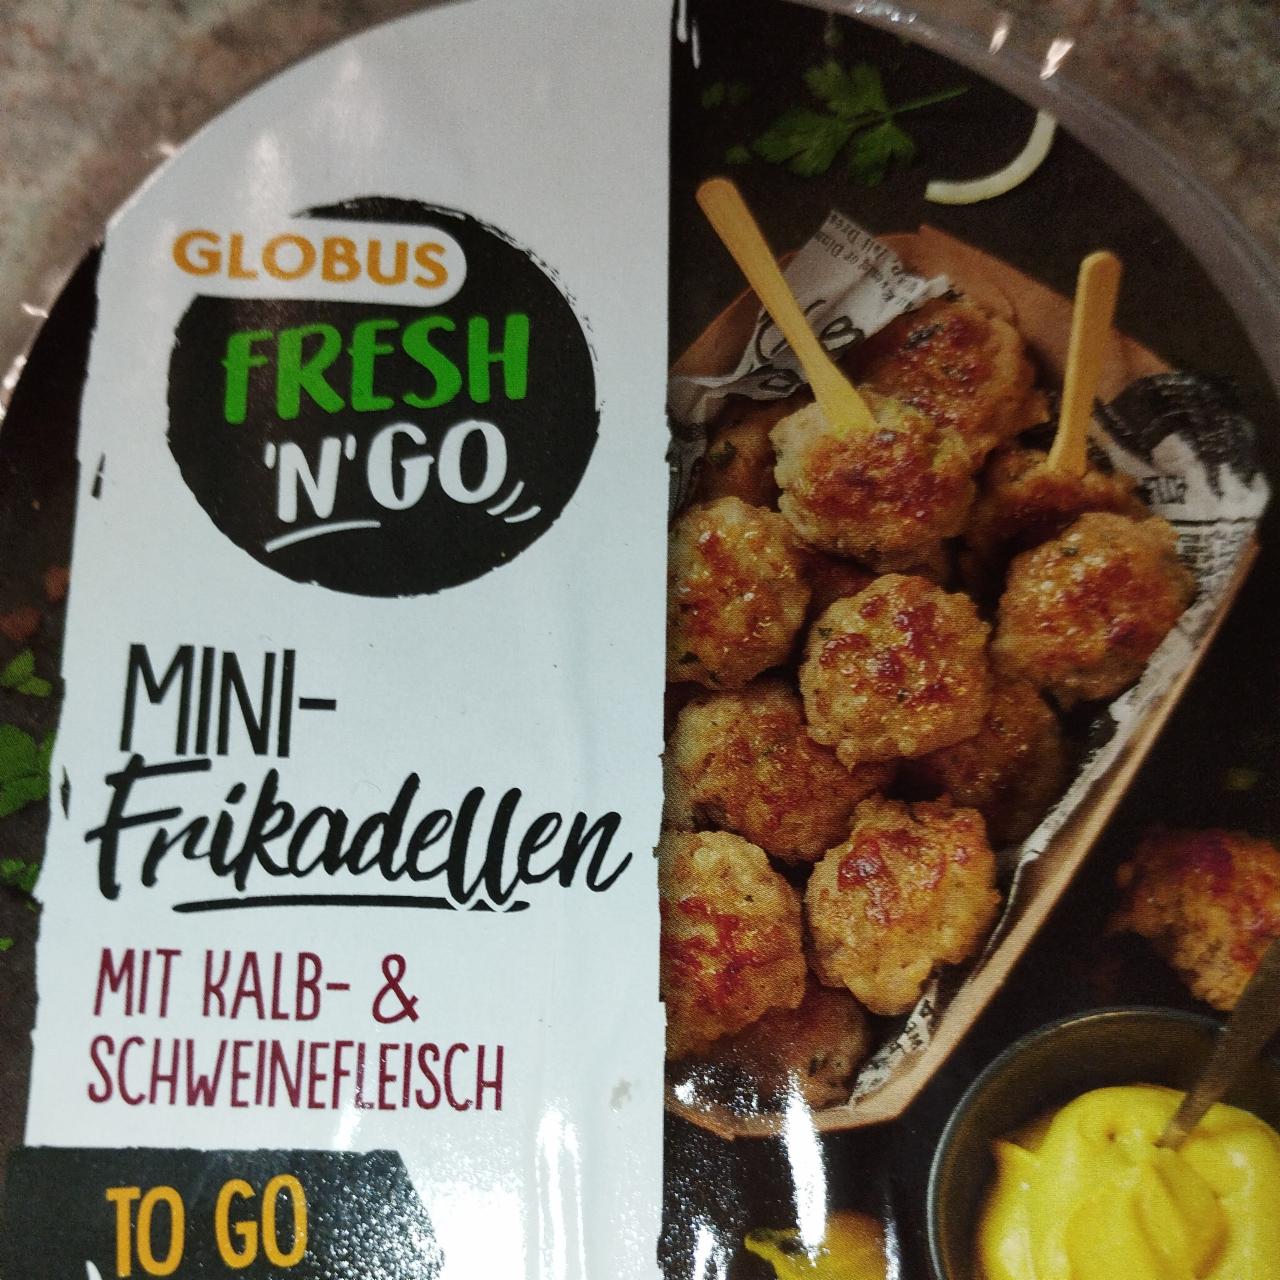 Fotografie - Mini-frikadellen mit kabl-&schweizenefleisch Globus Fresh 'n' go